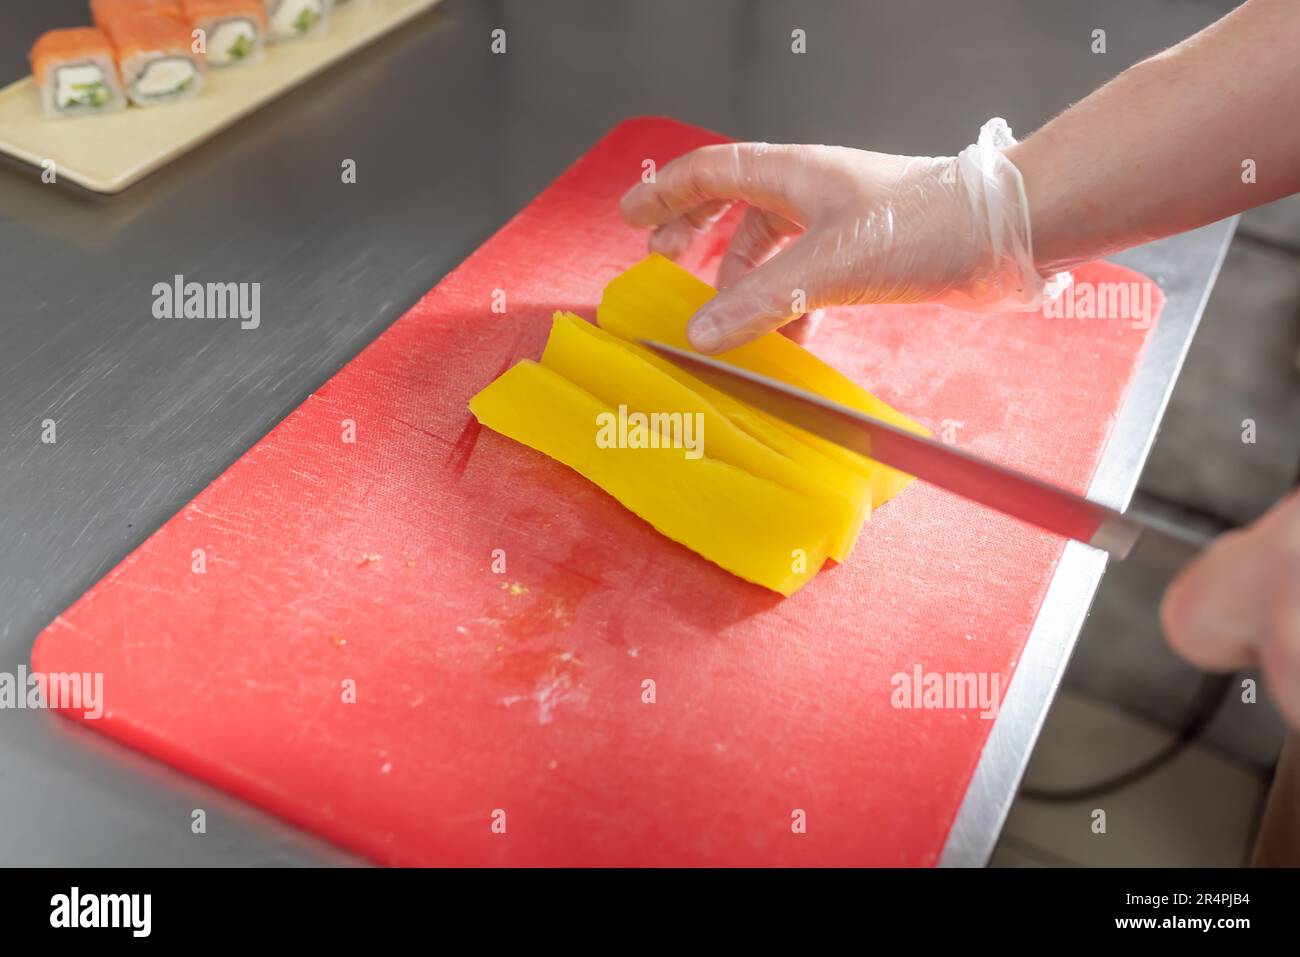 Le cuisinier coupe des daikon marinés pour des sushis sur un tableau rouge. Photo de haute qualité Banque D'Images